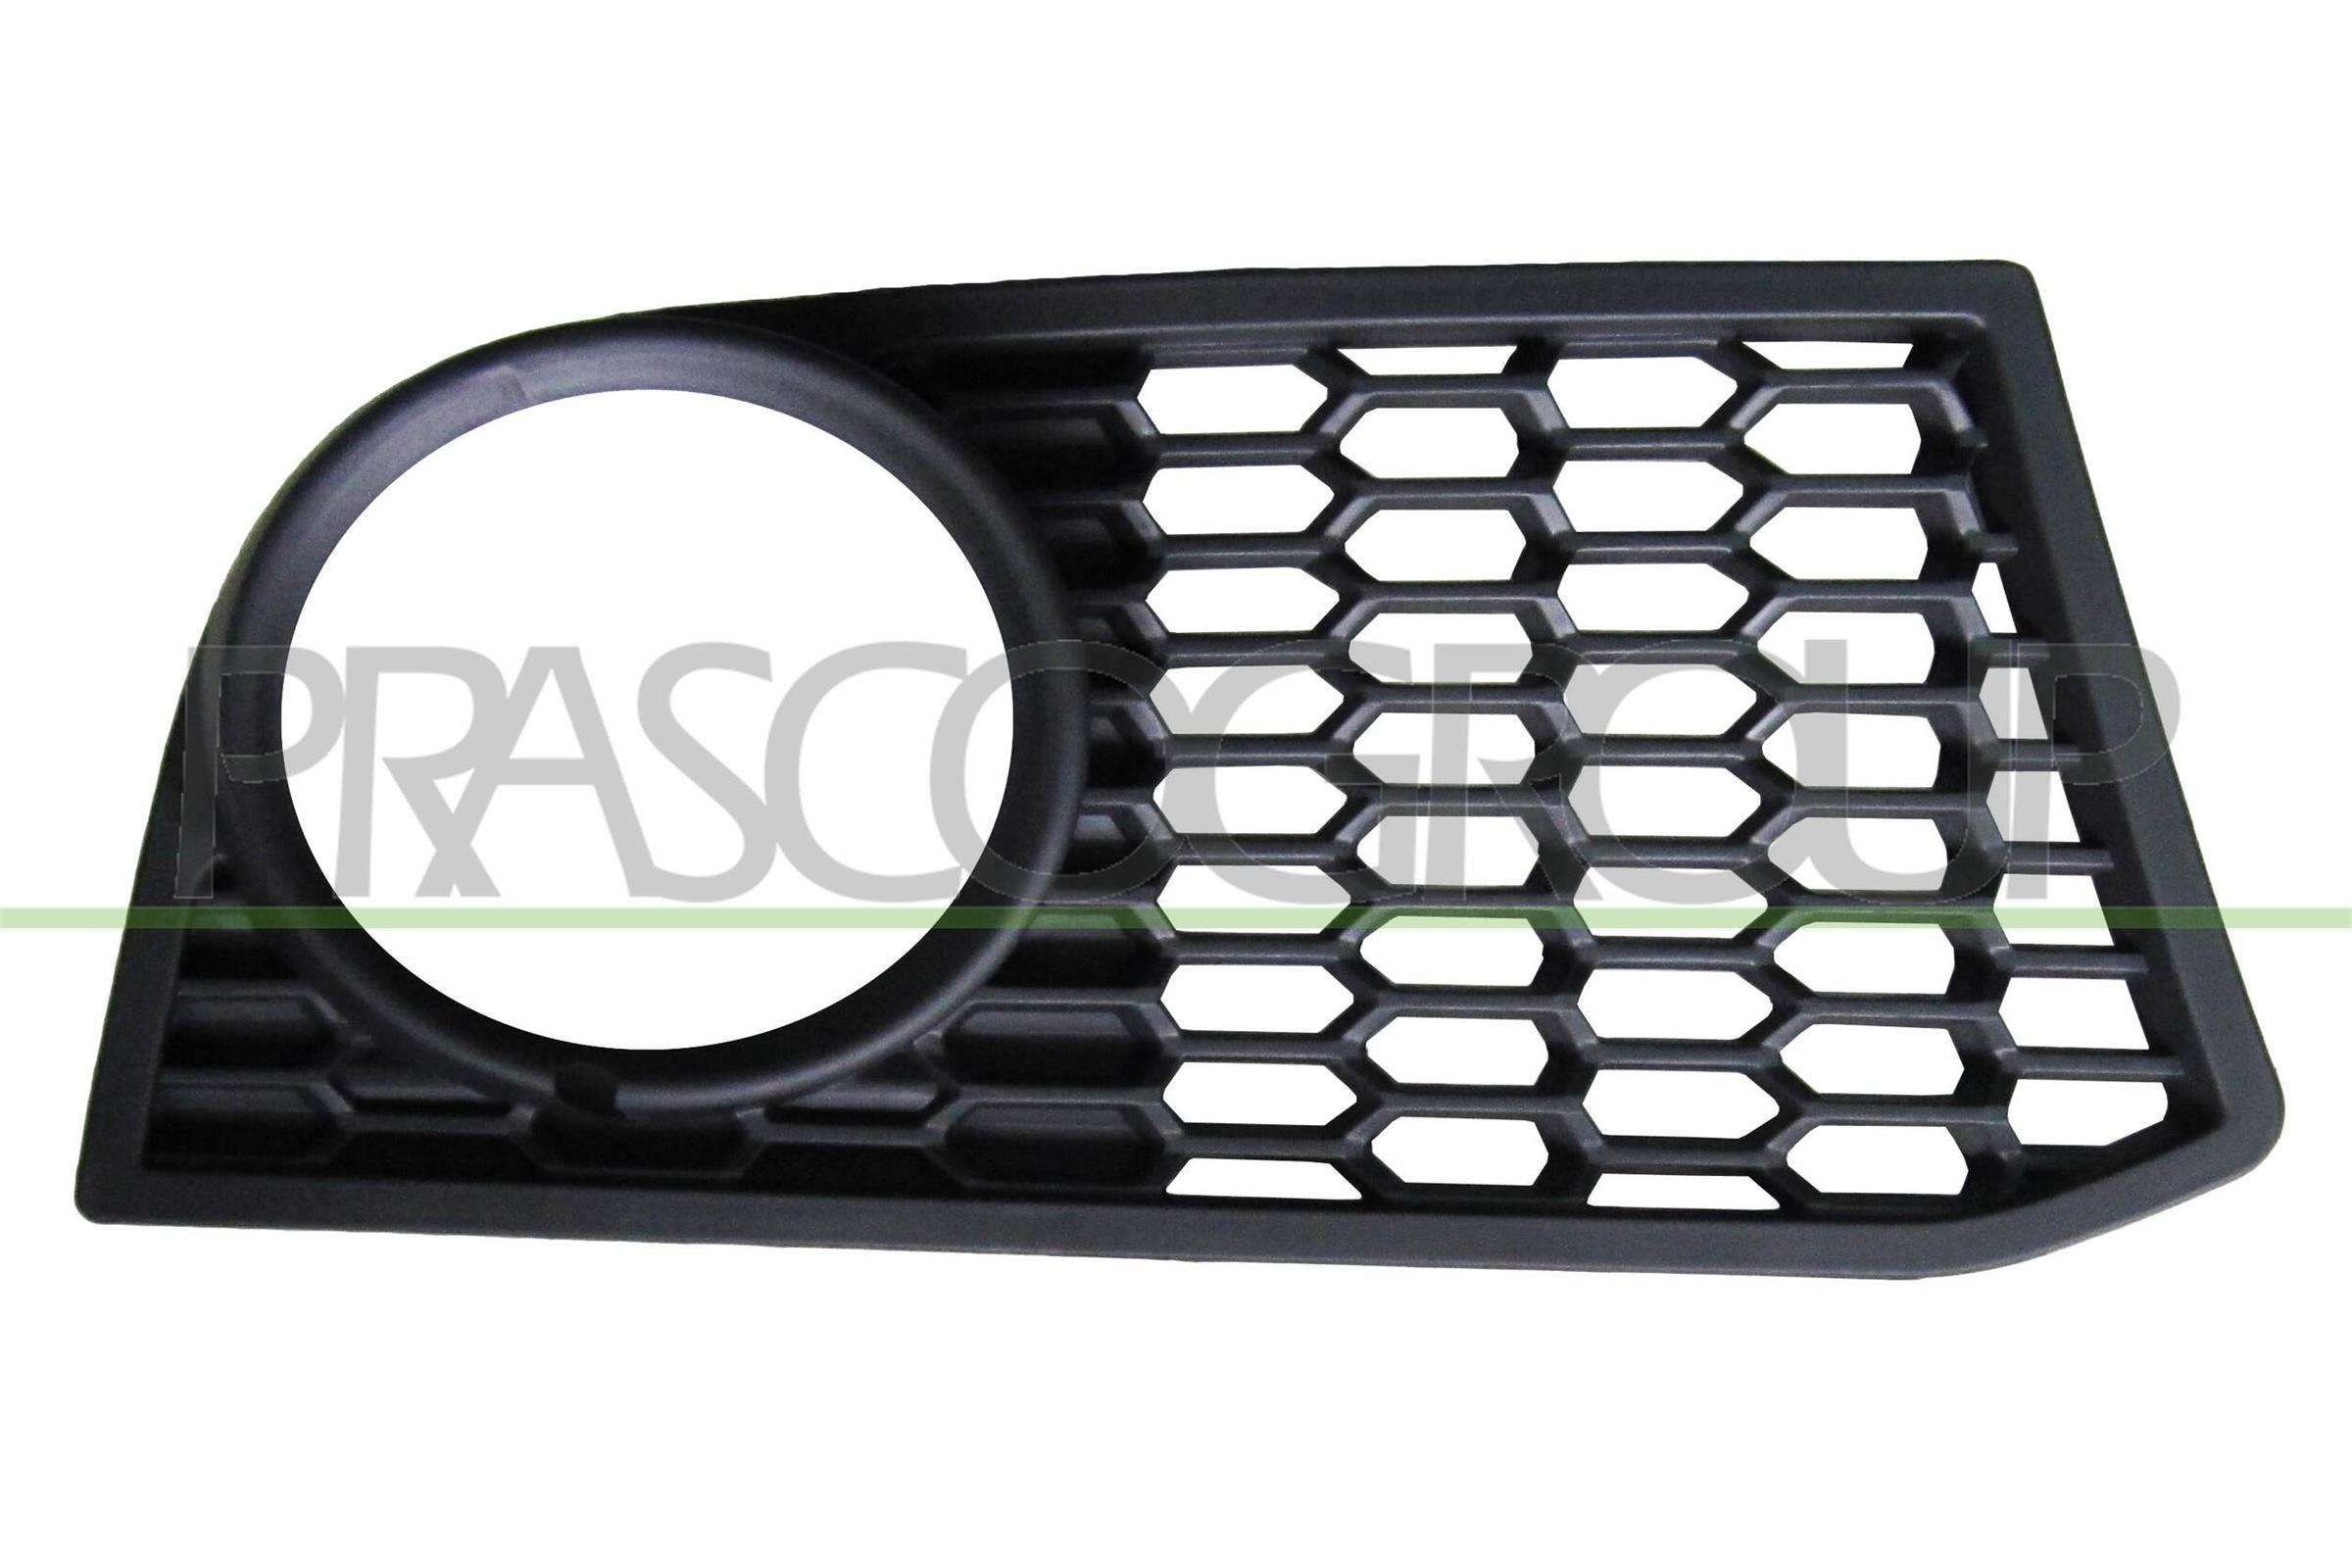 PRASCO BM0492123 Fog light parts order